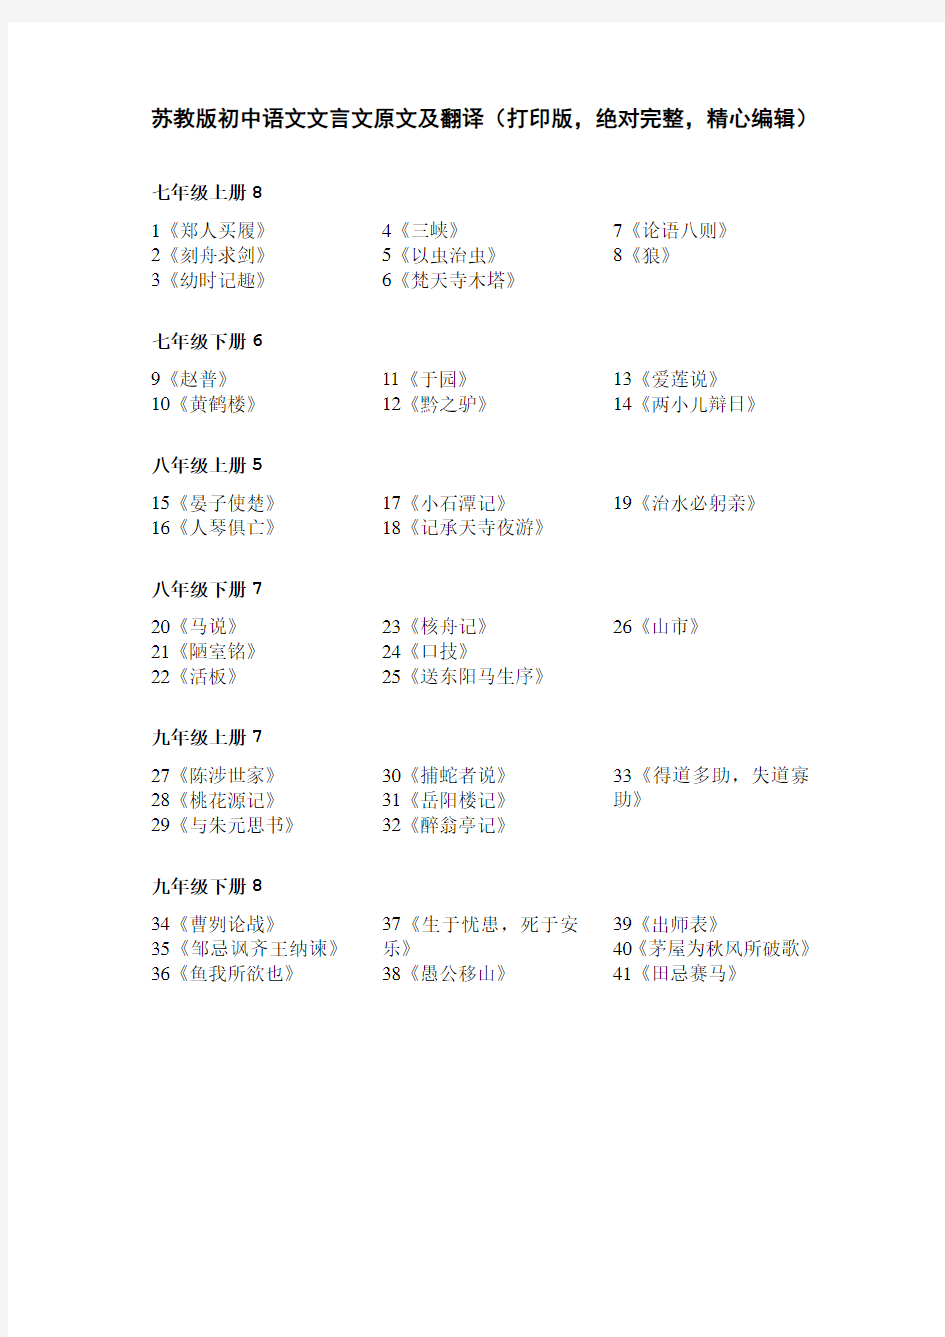 苏教版初中语文文言文原文及翻译(打印版,绝对完整,精心